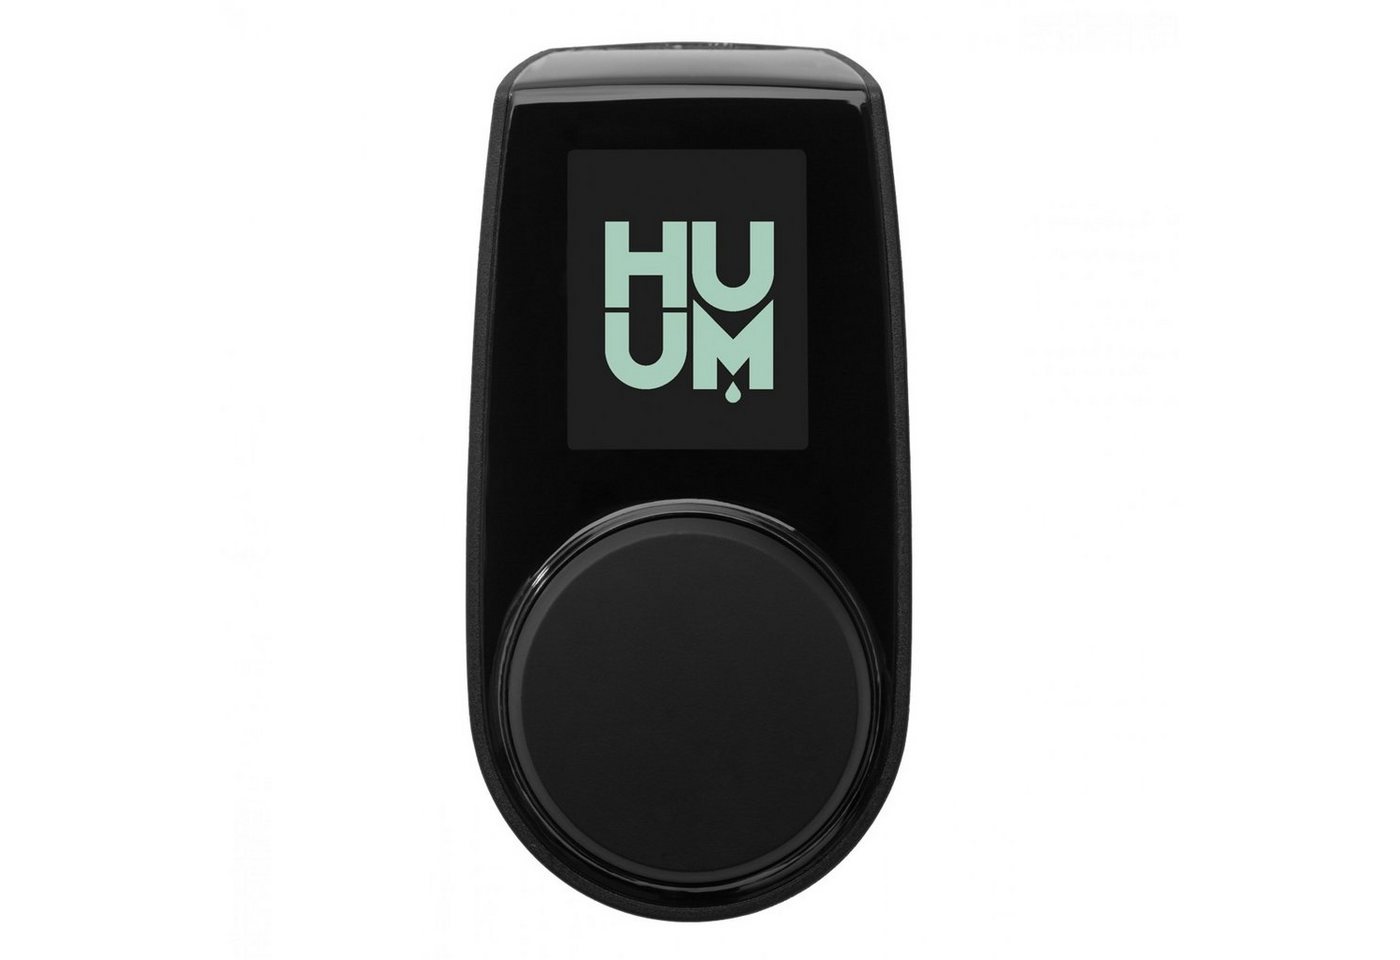 HUUM Sauna-Steuergerät HUUM UKU WiFi Black 4.1 Saunasteuerung bis 18 kW mit App-Steuerung von HUUM